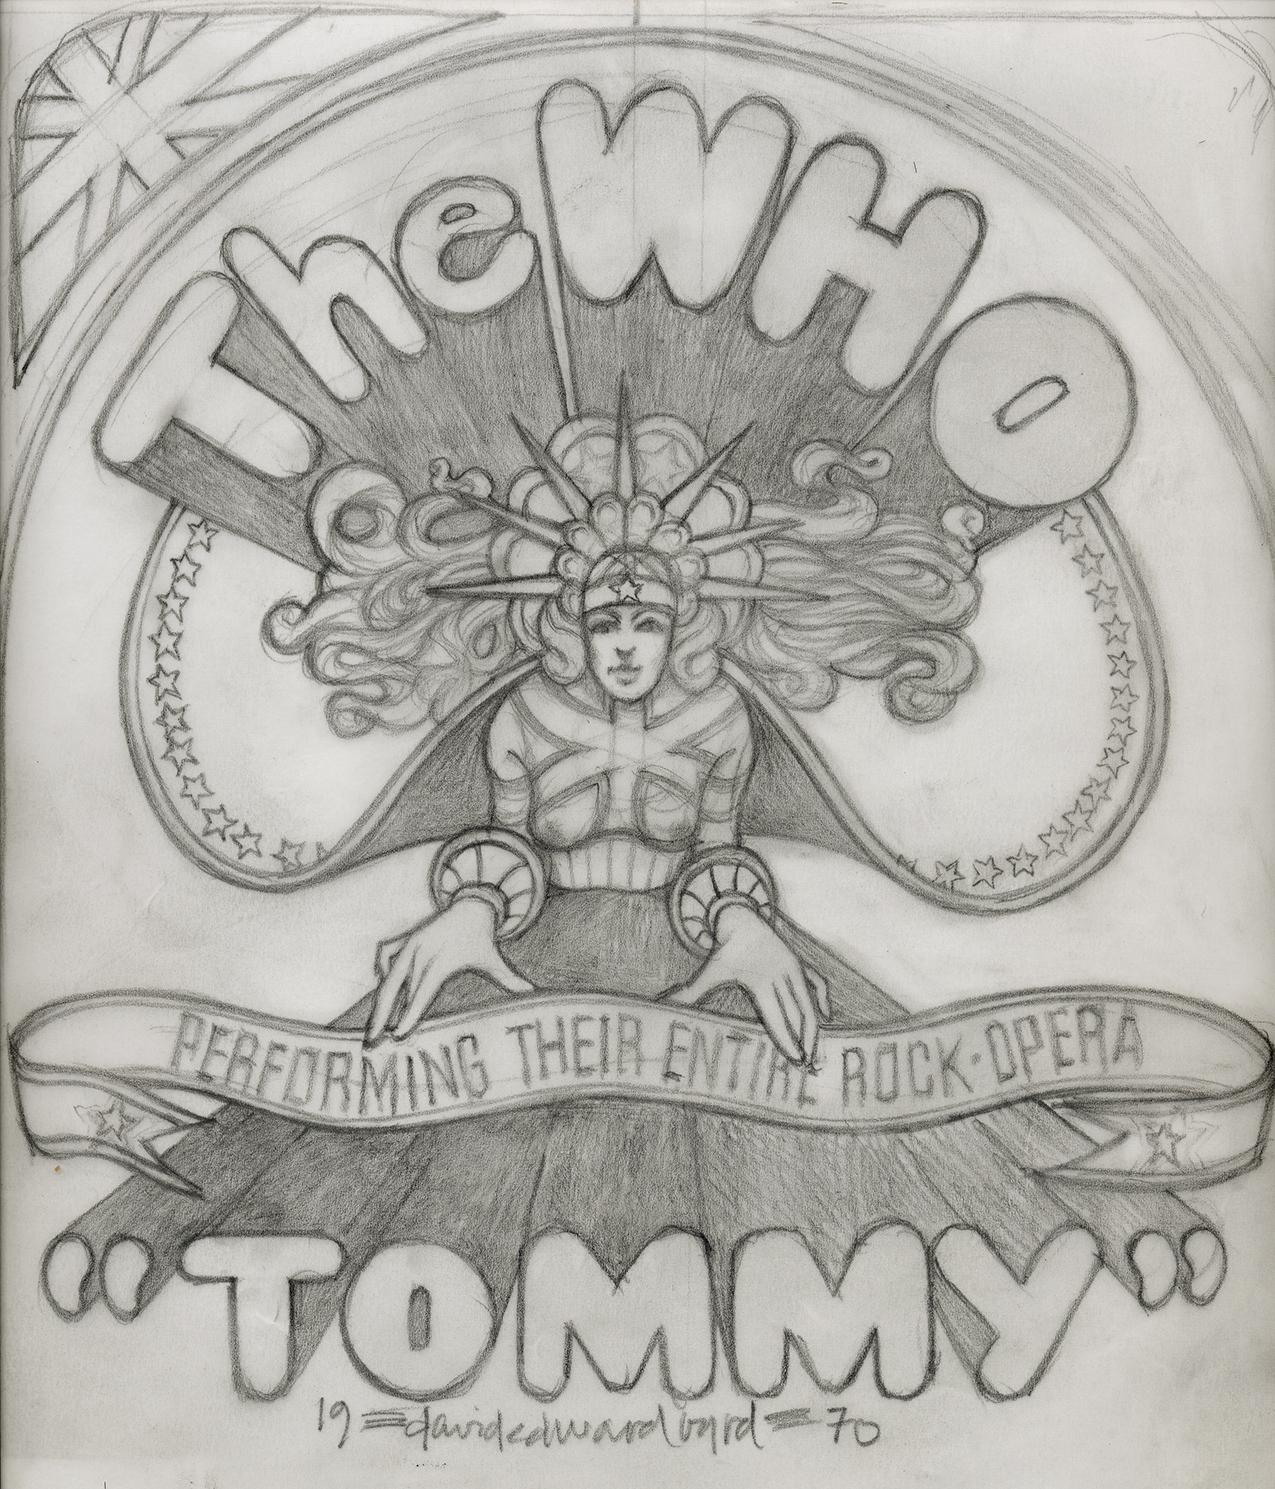 Original The WHO, dessin de Tommy Fillmore East, 1970  pour leur affiche Tommy - Art de David Edward Byrd 